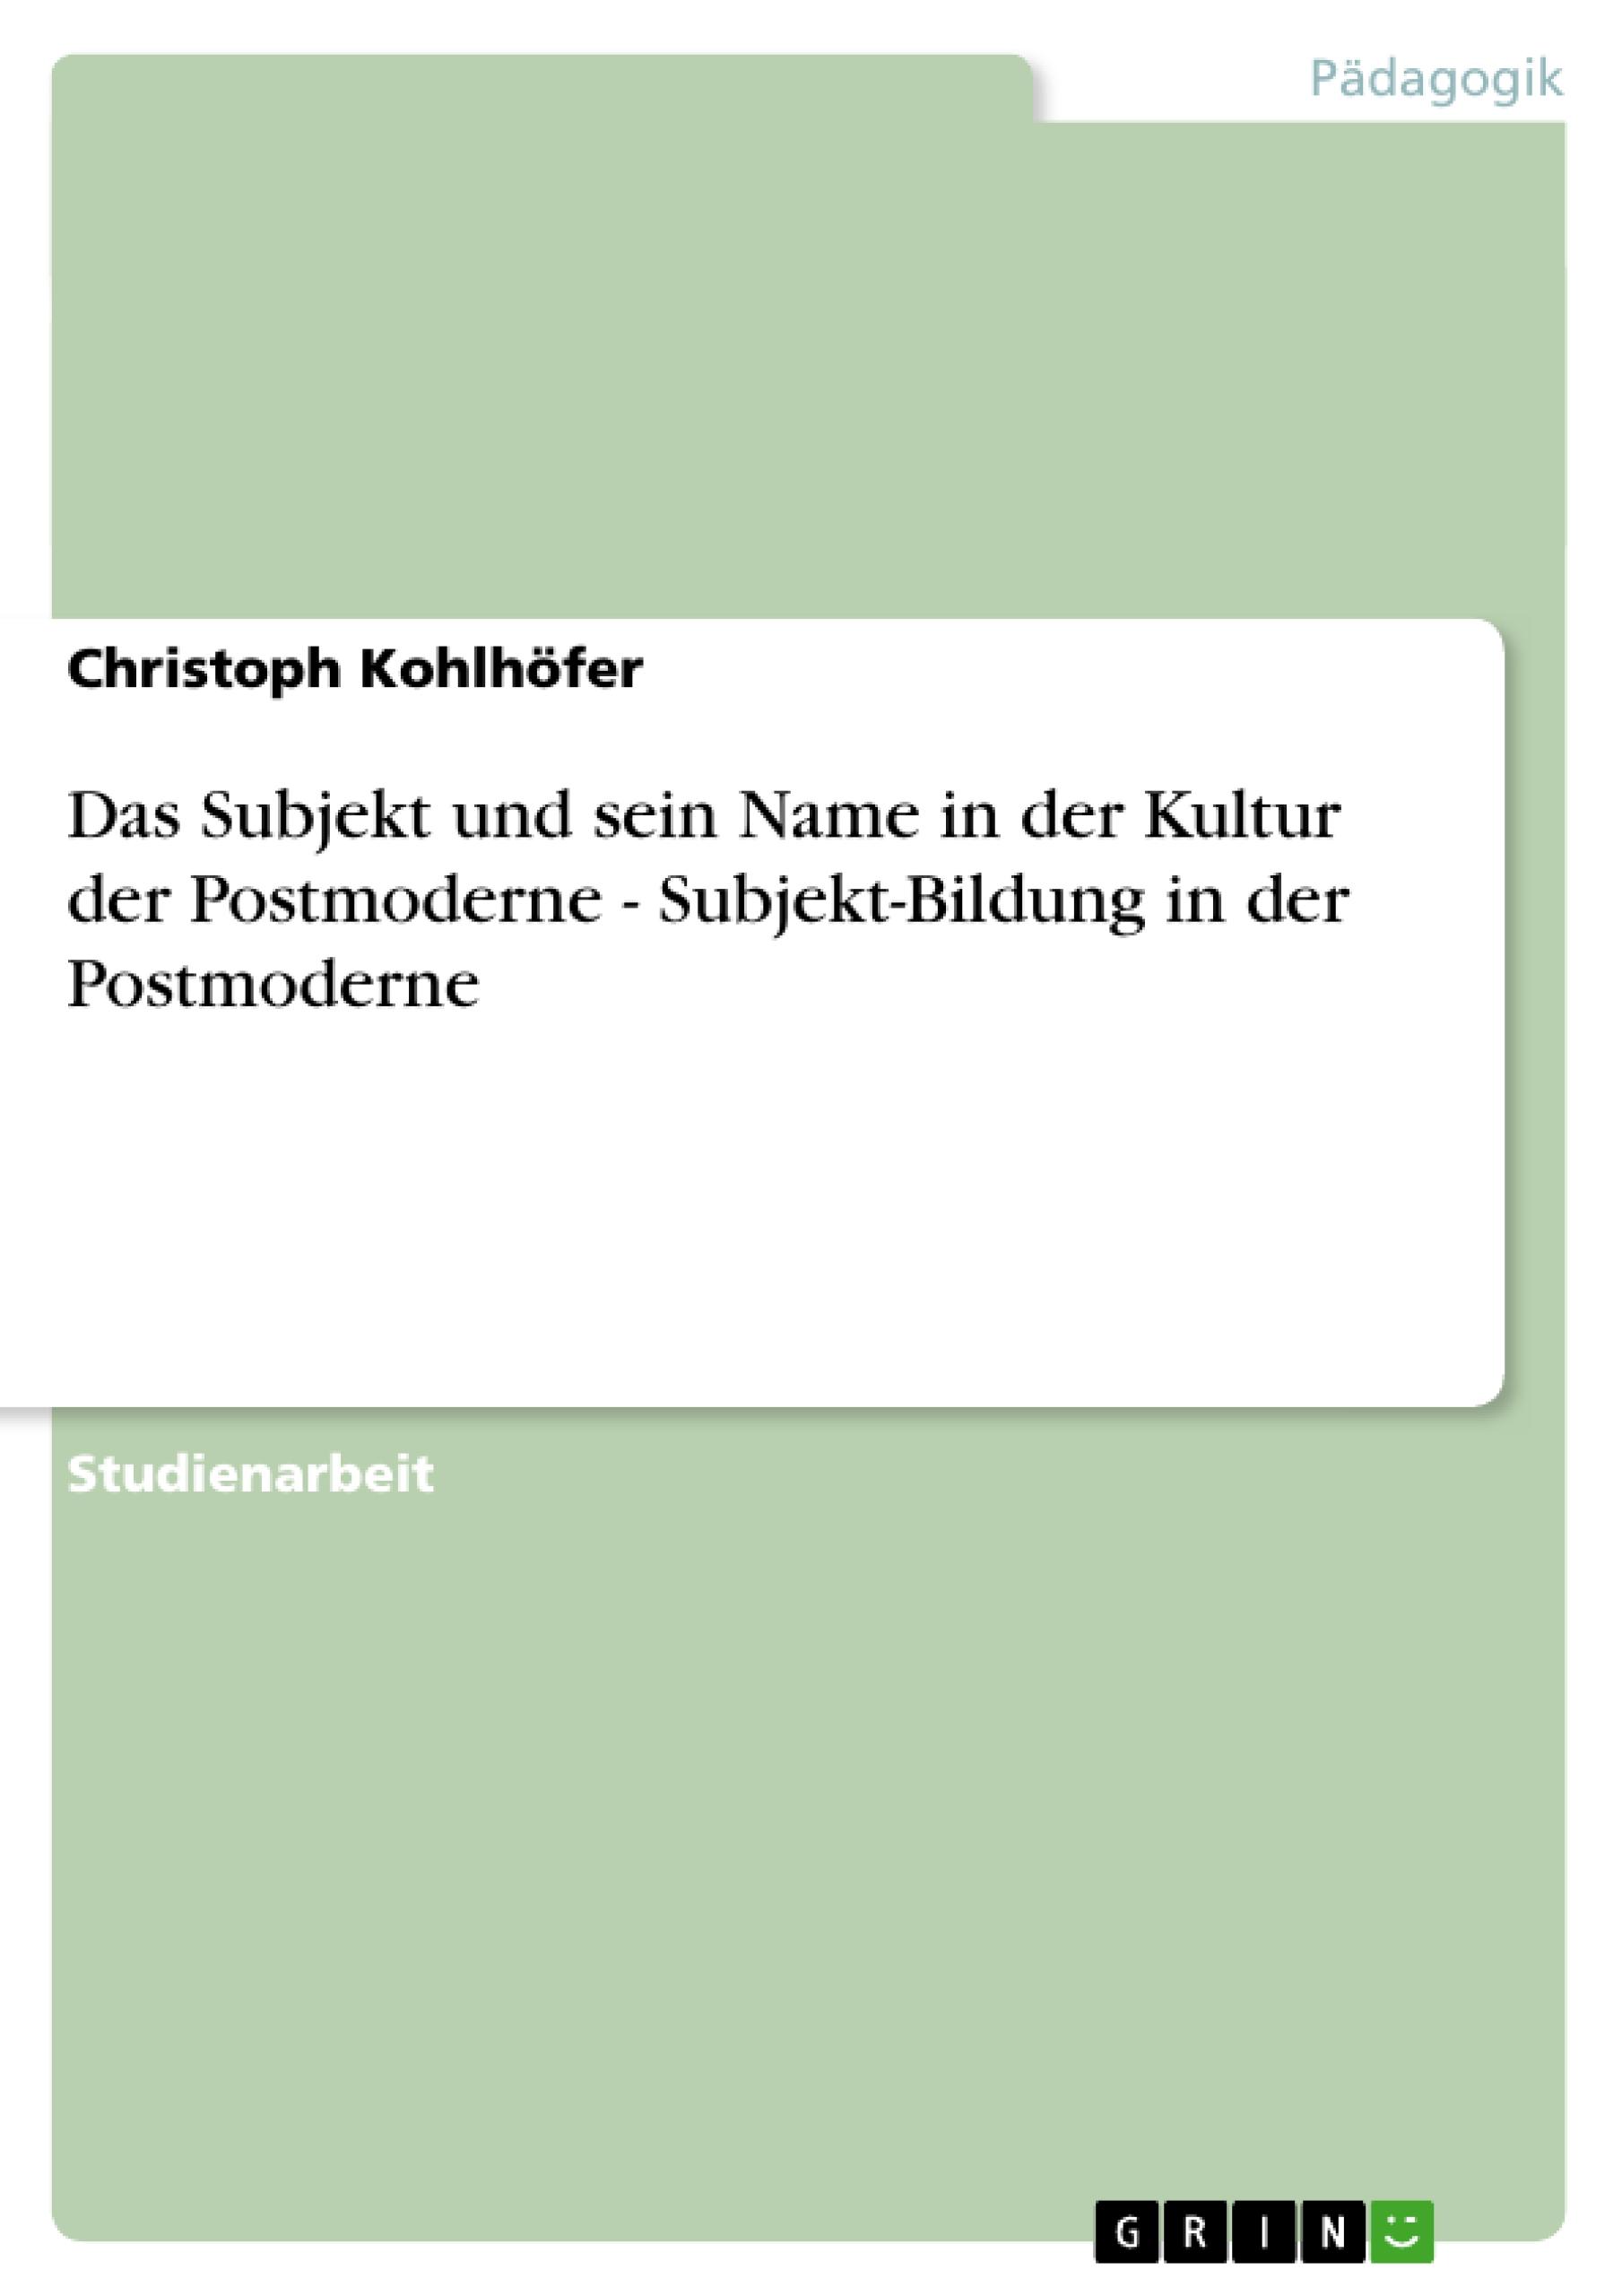 Das Subjekt und sein Name in der Kultur der Postmoderne - Subjekt-Bildung in der Postmoderne - Kohlhoefer, Christoph